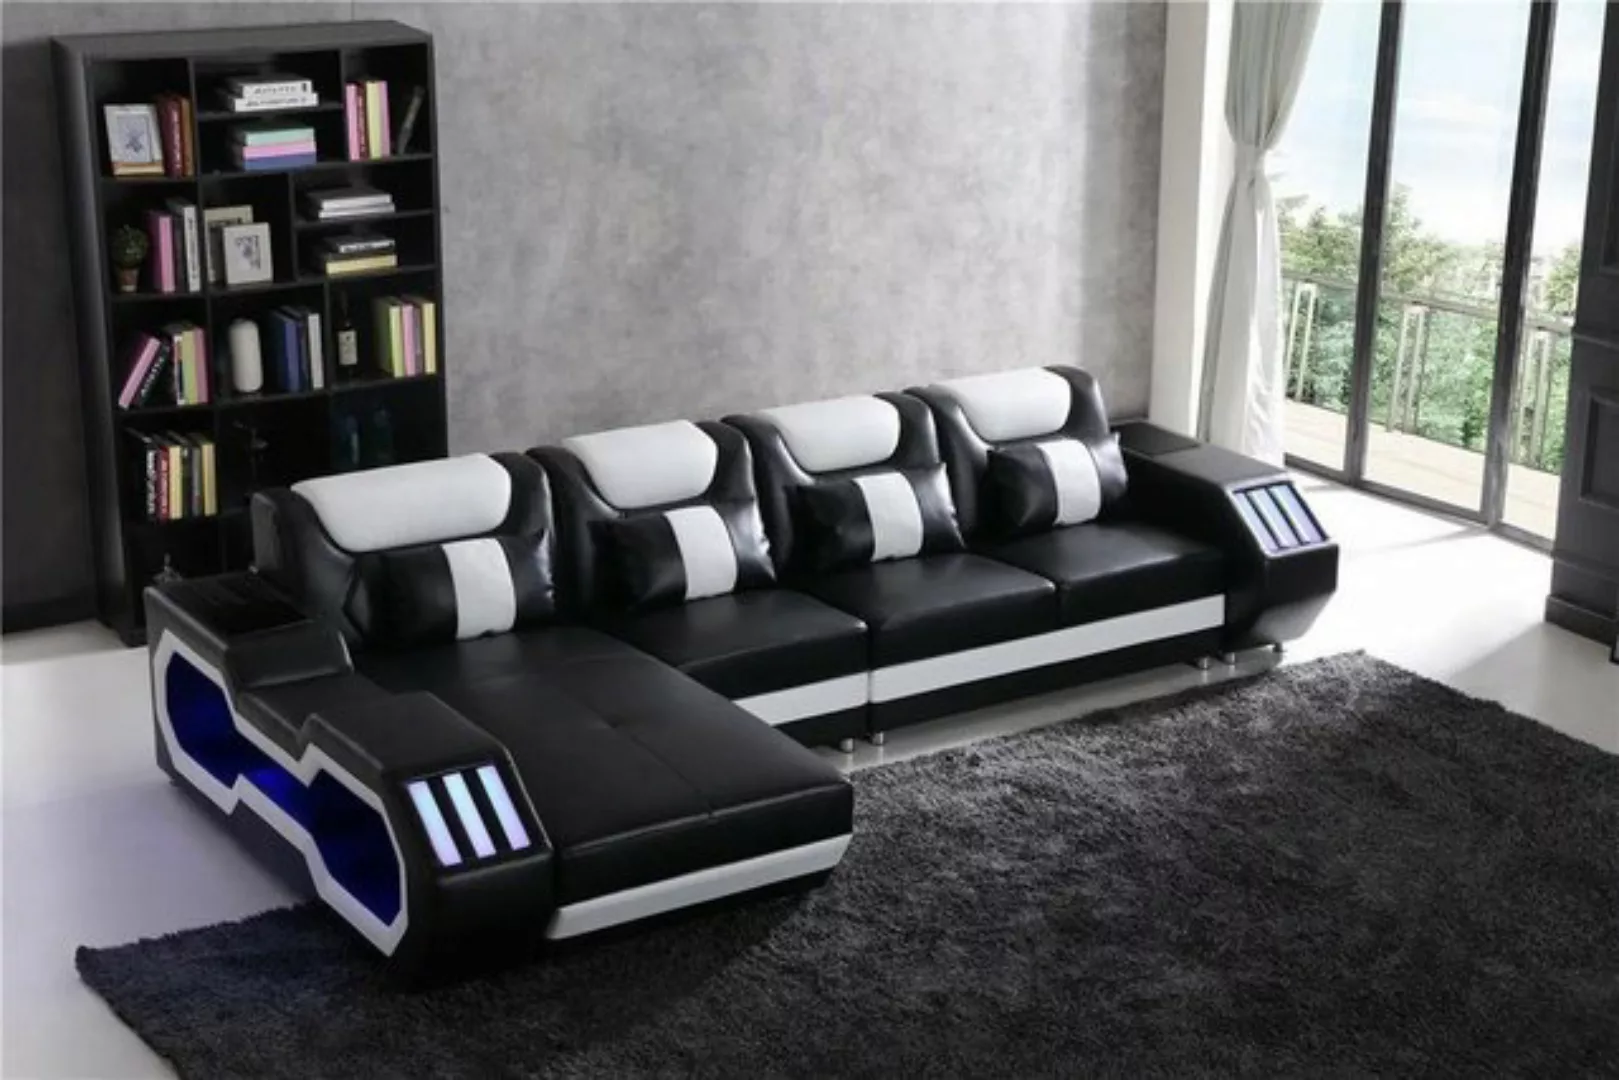 JVmoebel Ecksofa Relax Couchen L Form Shape Sofa Couch Beleuchtet Wohnlands günstig online kaufen